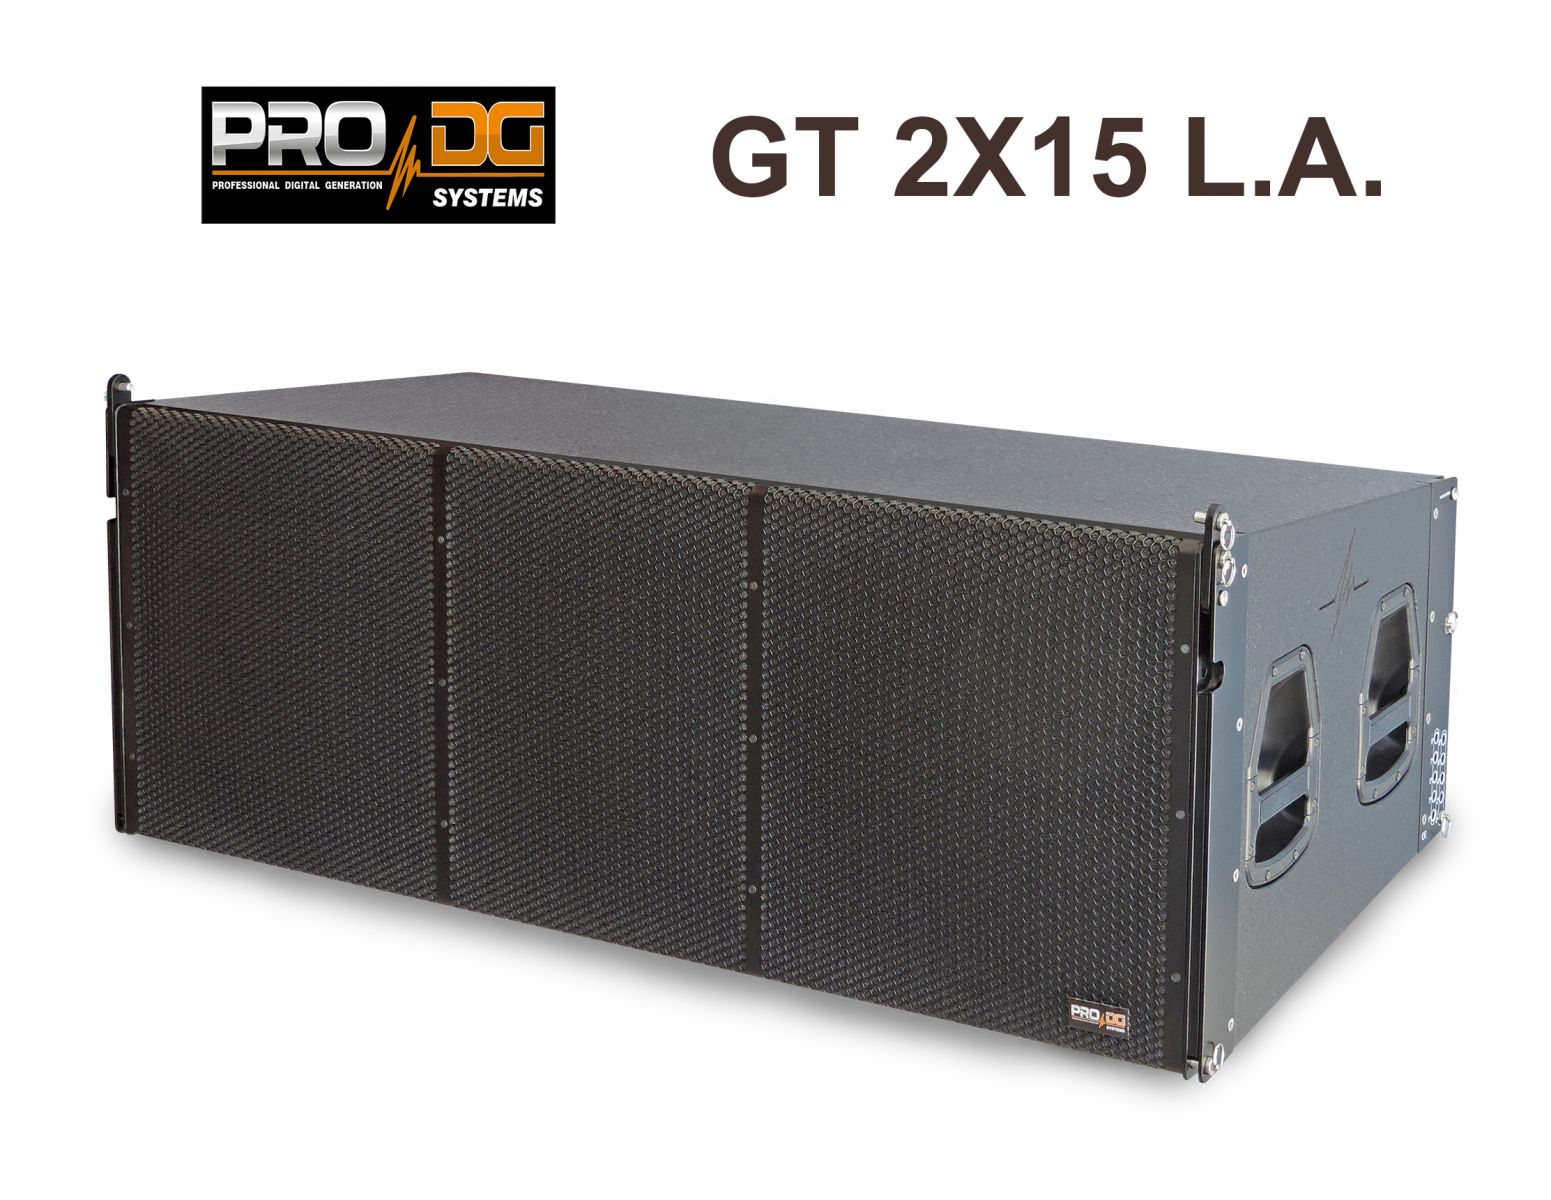 PRO DG GT-2X15-LA